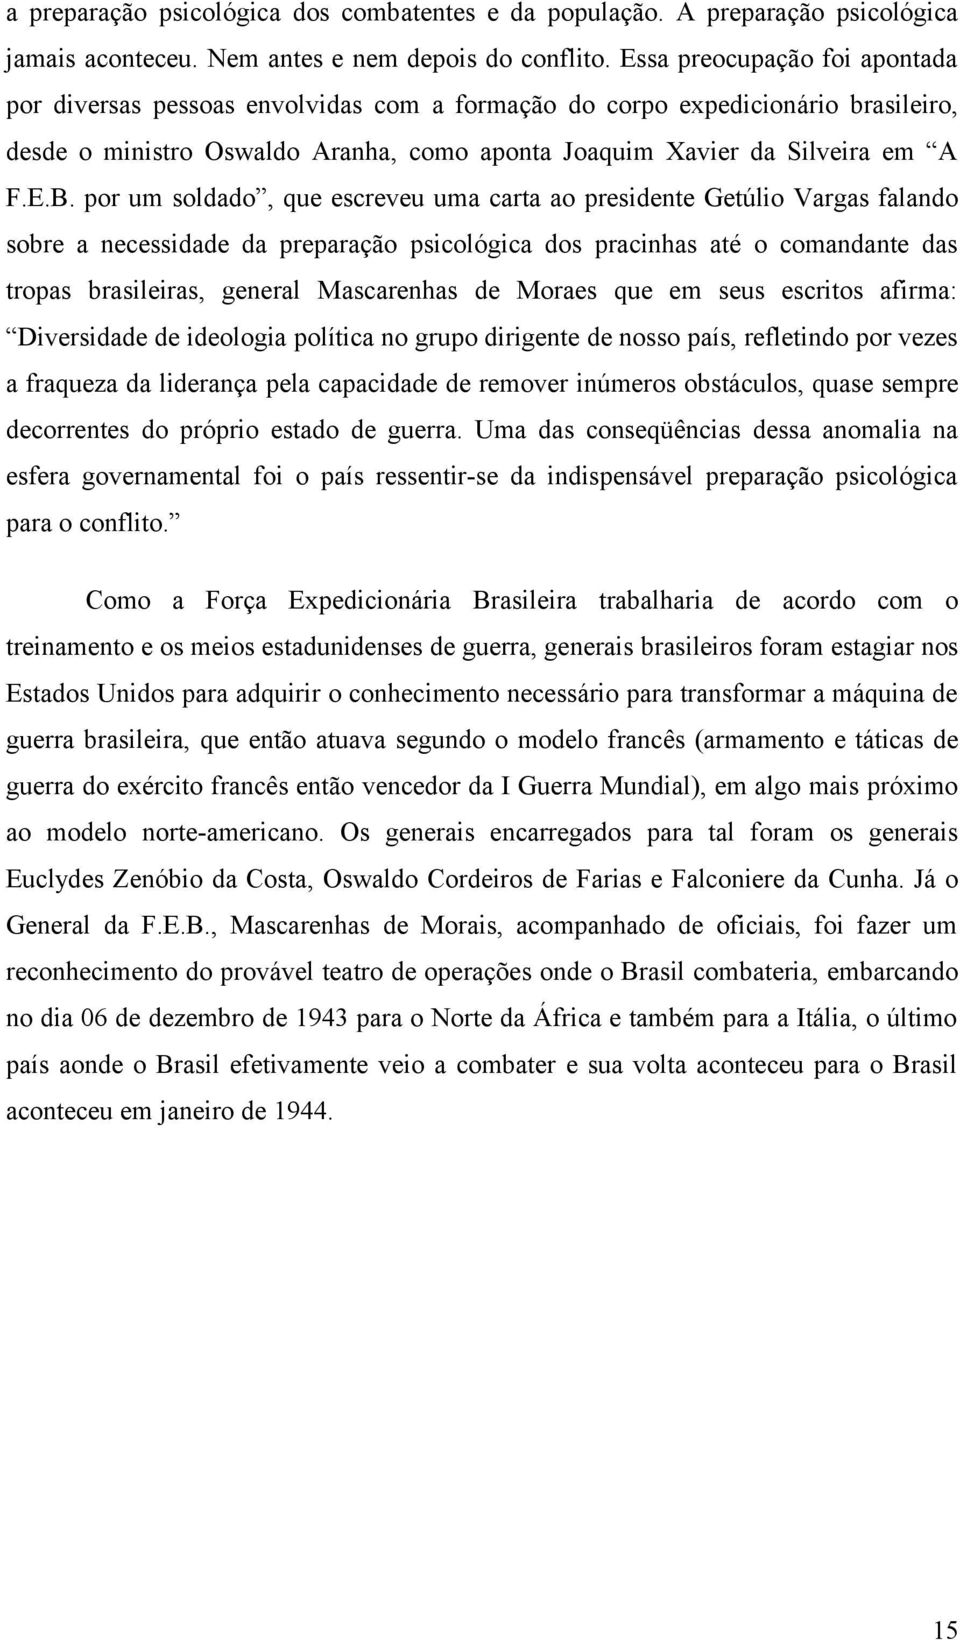 por um soldado, que escreveu uma carta ao presidente Getúlio Vargas falando sobre a necessidade da preparação psicológica dos pracinhas até o comandante das tropas brasileiras, general Mascarenhas de